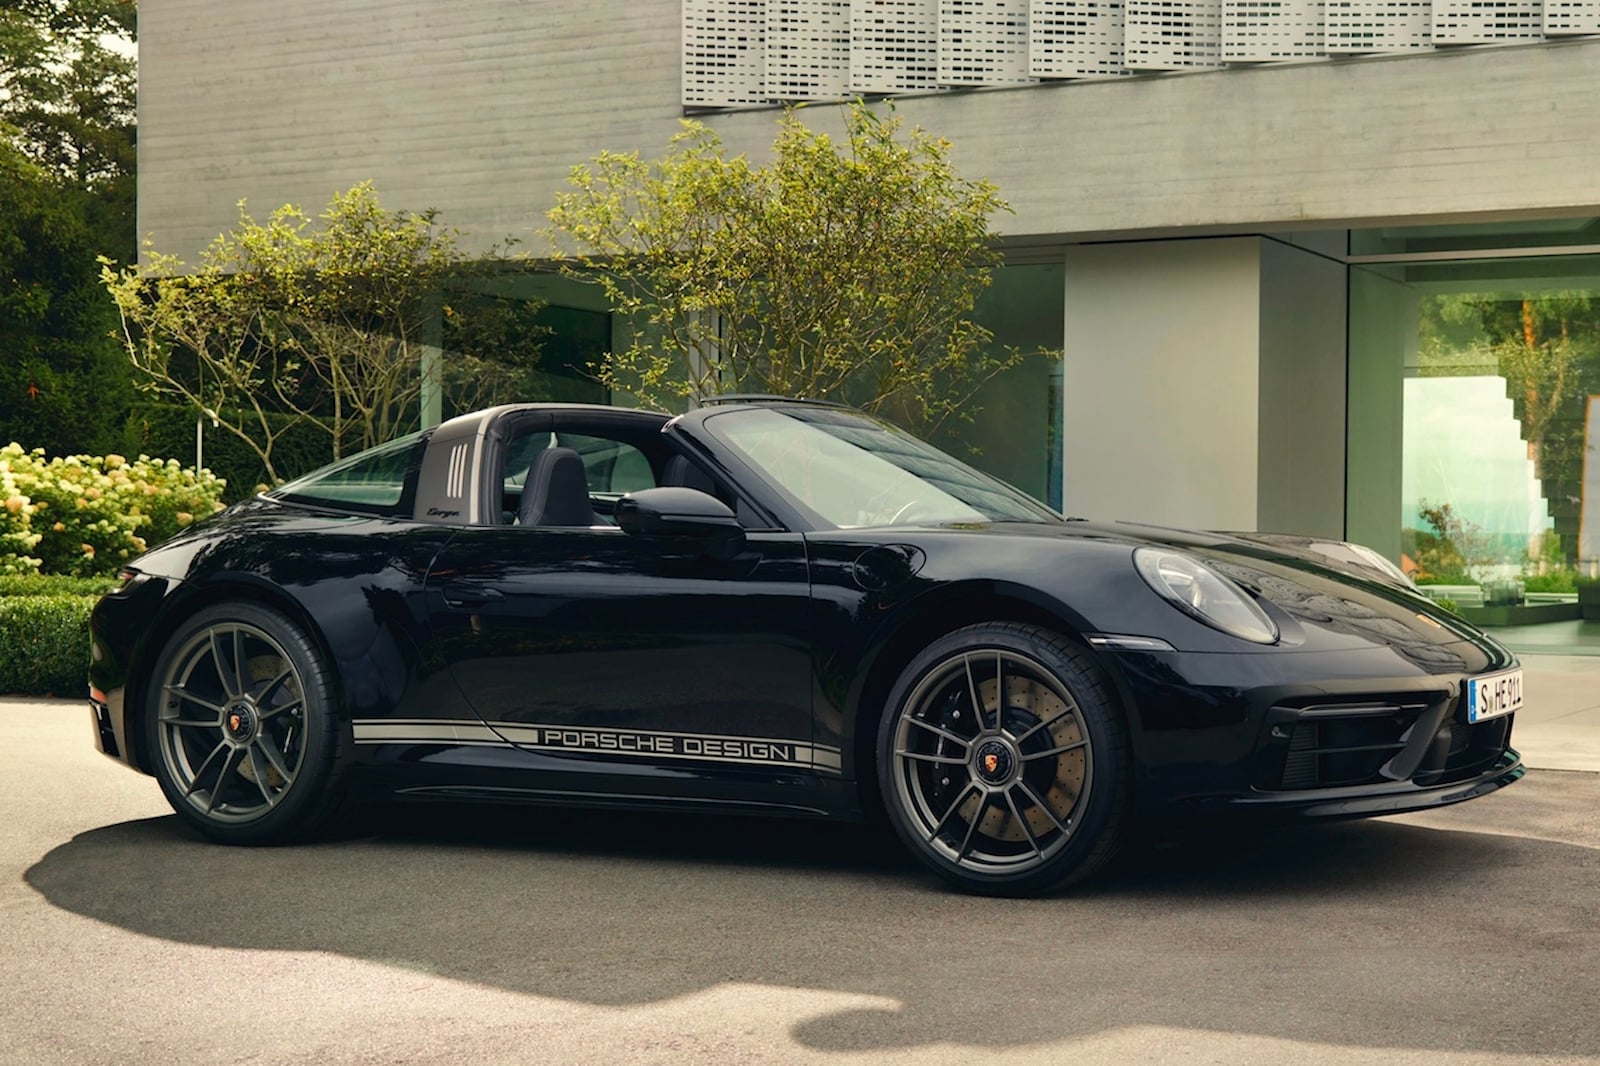 2022 Porsche 911 Edition 50 Years Porsche Design Wants To Celebrate